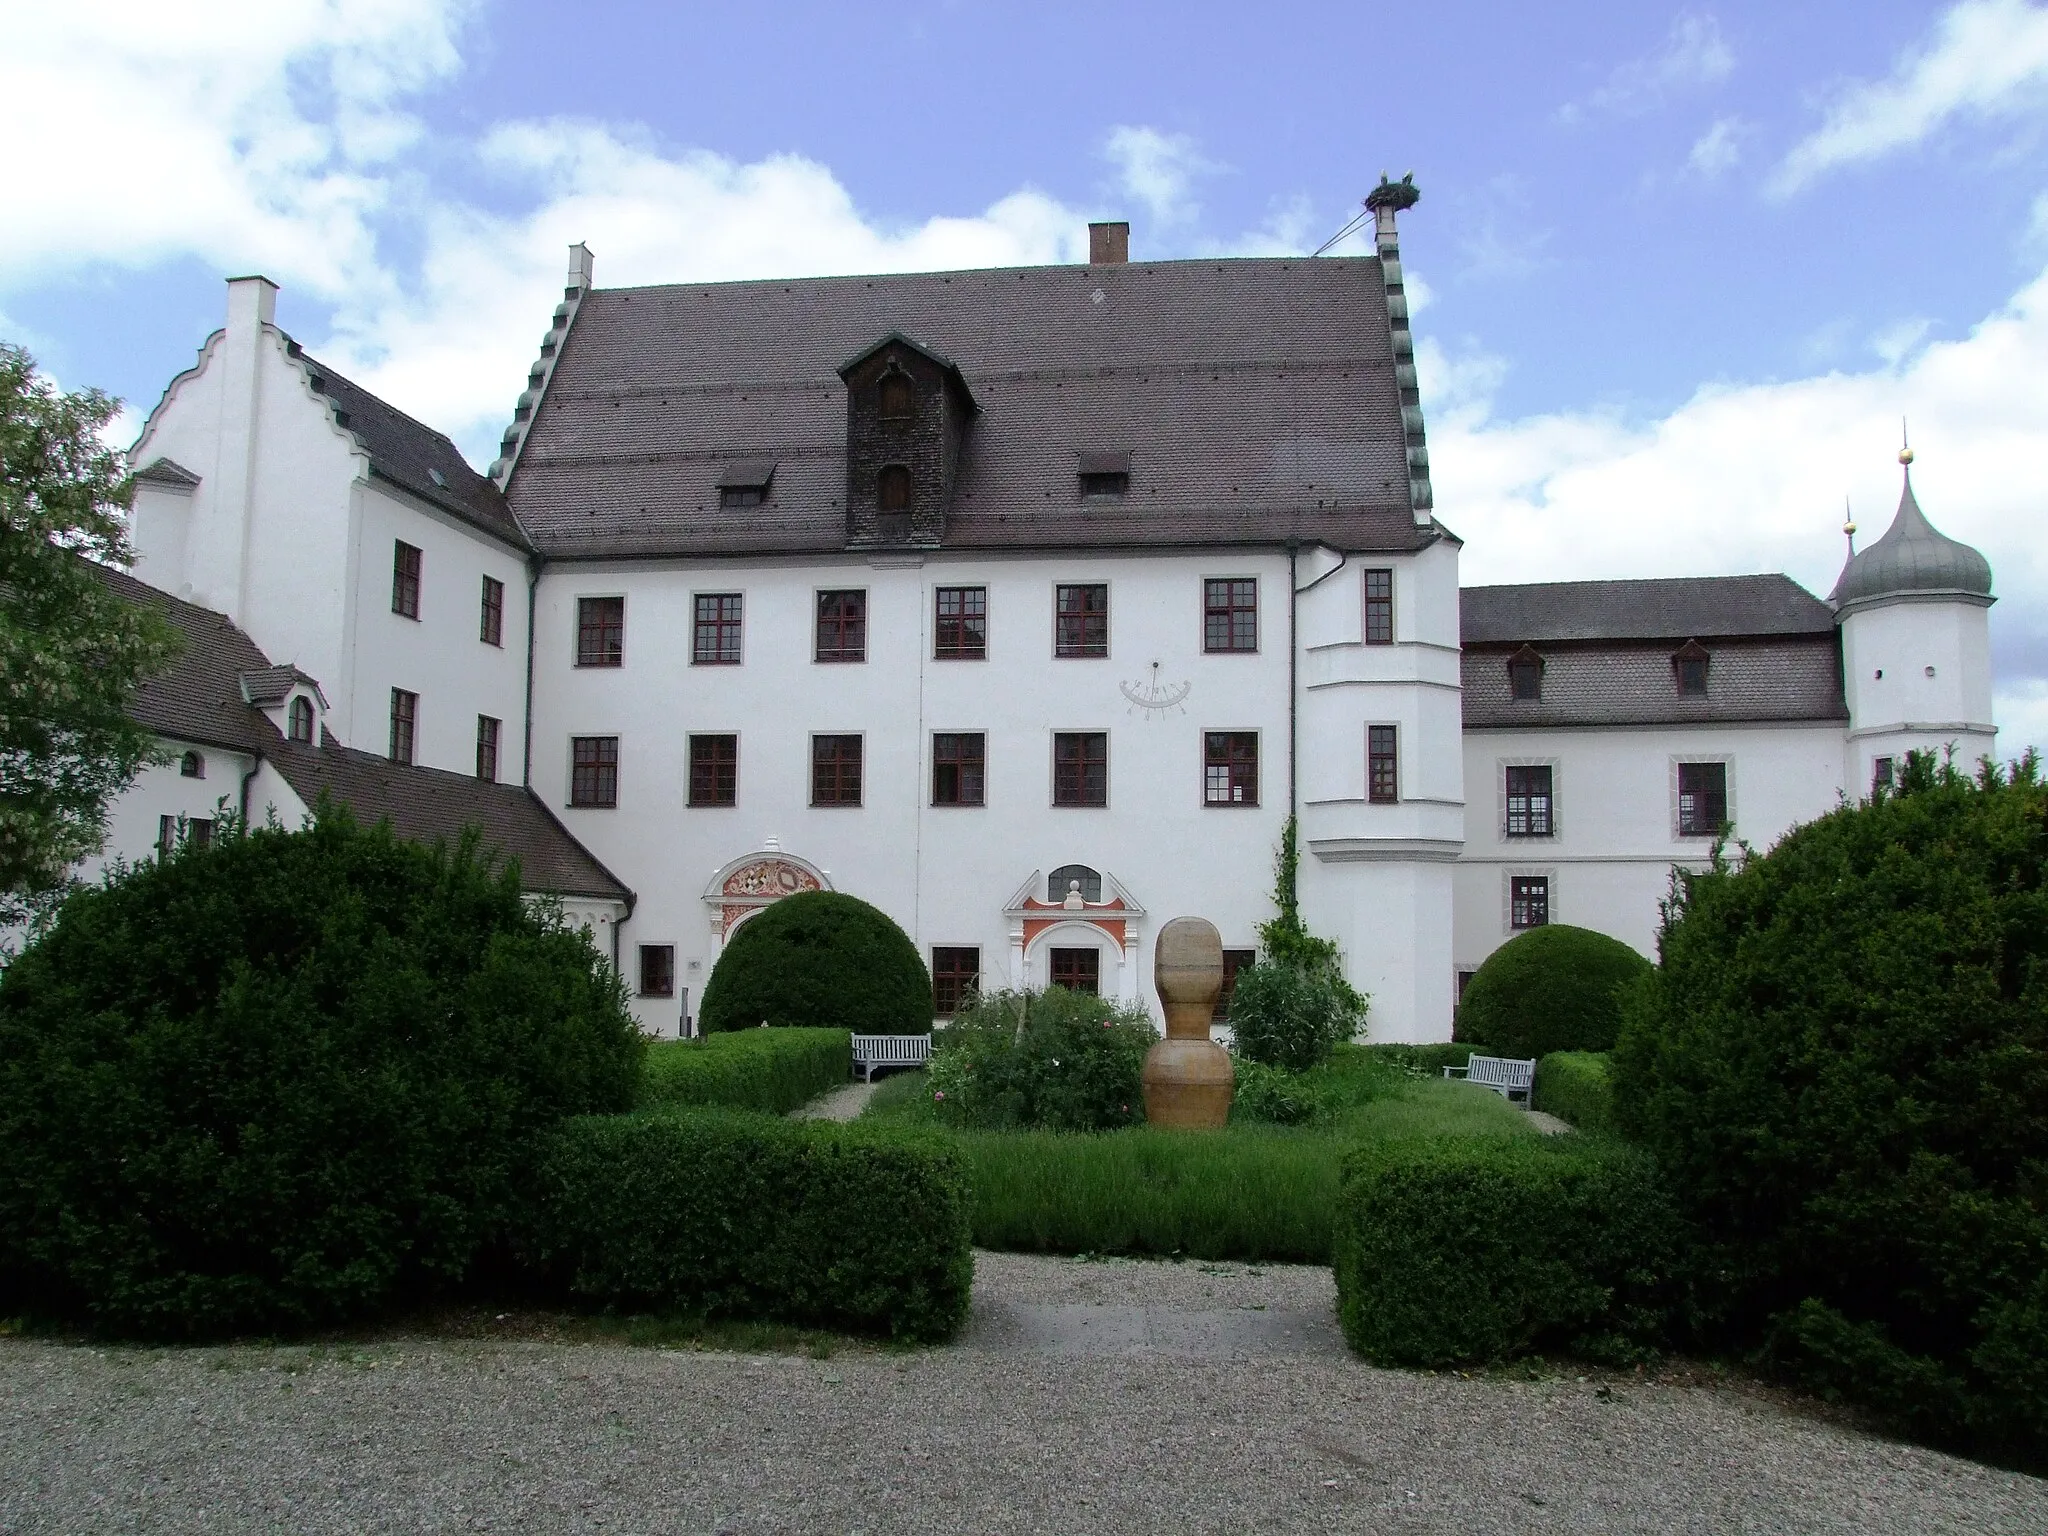 Photo showing: Vöhlinschloß in Illertissen

Hauptgebäude des Schlosses